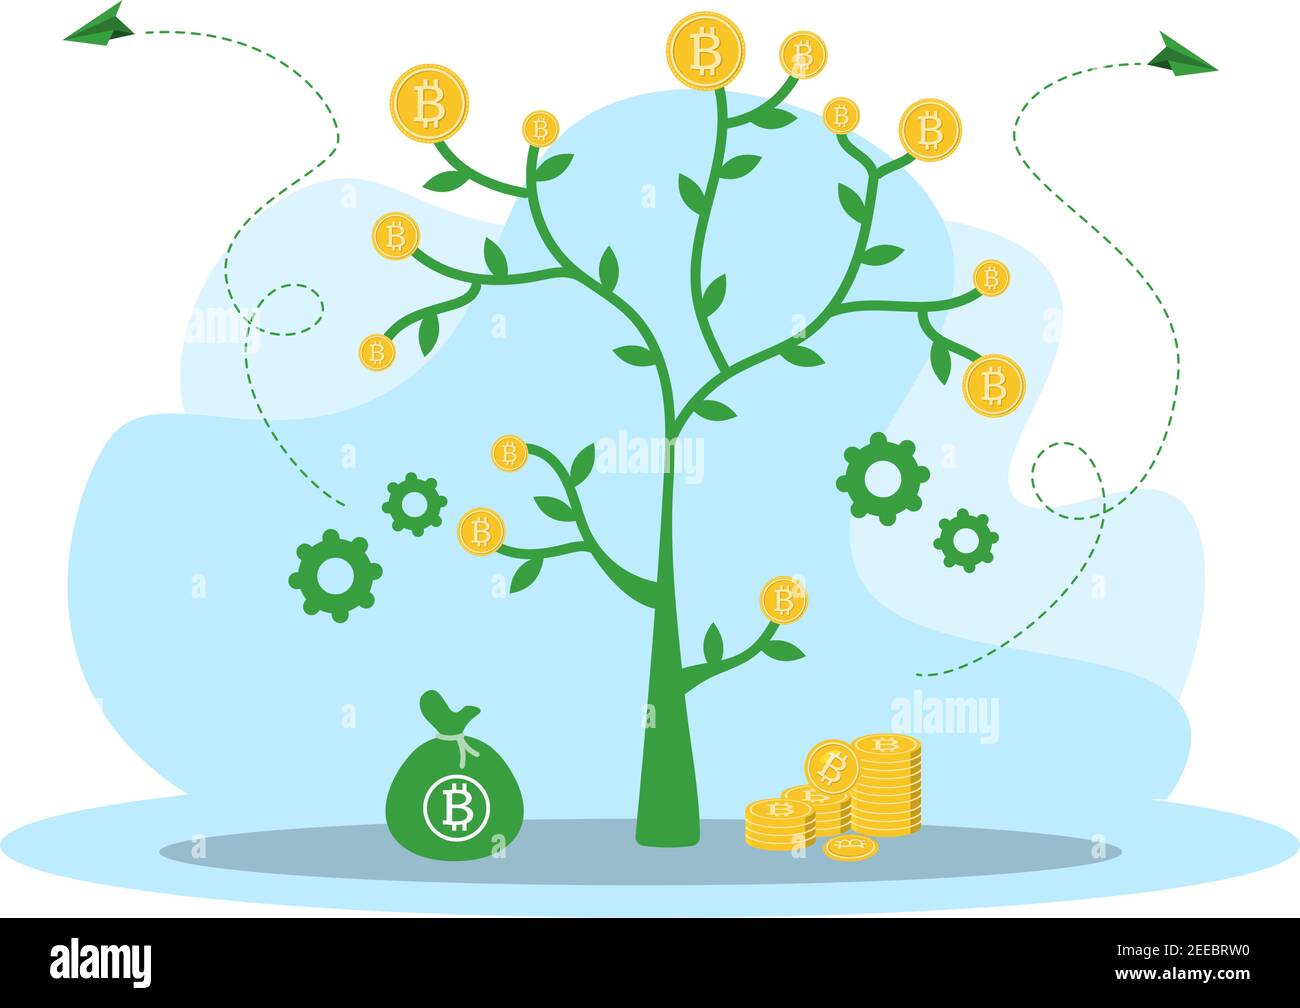 Crypto-monnaie Illustration Flat Design avec homme d'affaires mineurs et pièces. Pour la technologie financière, blockchain, et le concept d'analyse de données Illustration de Vecteur